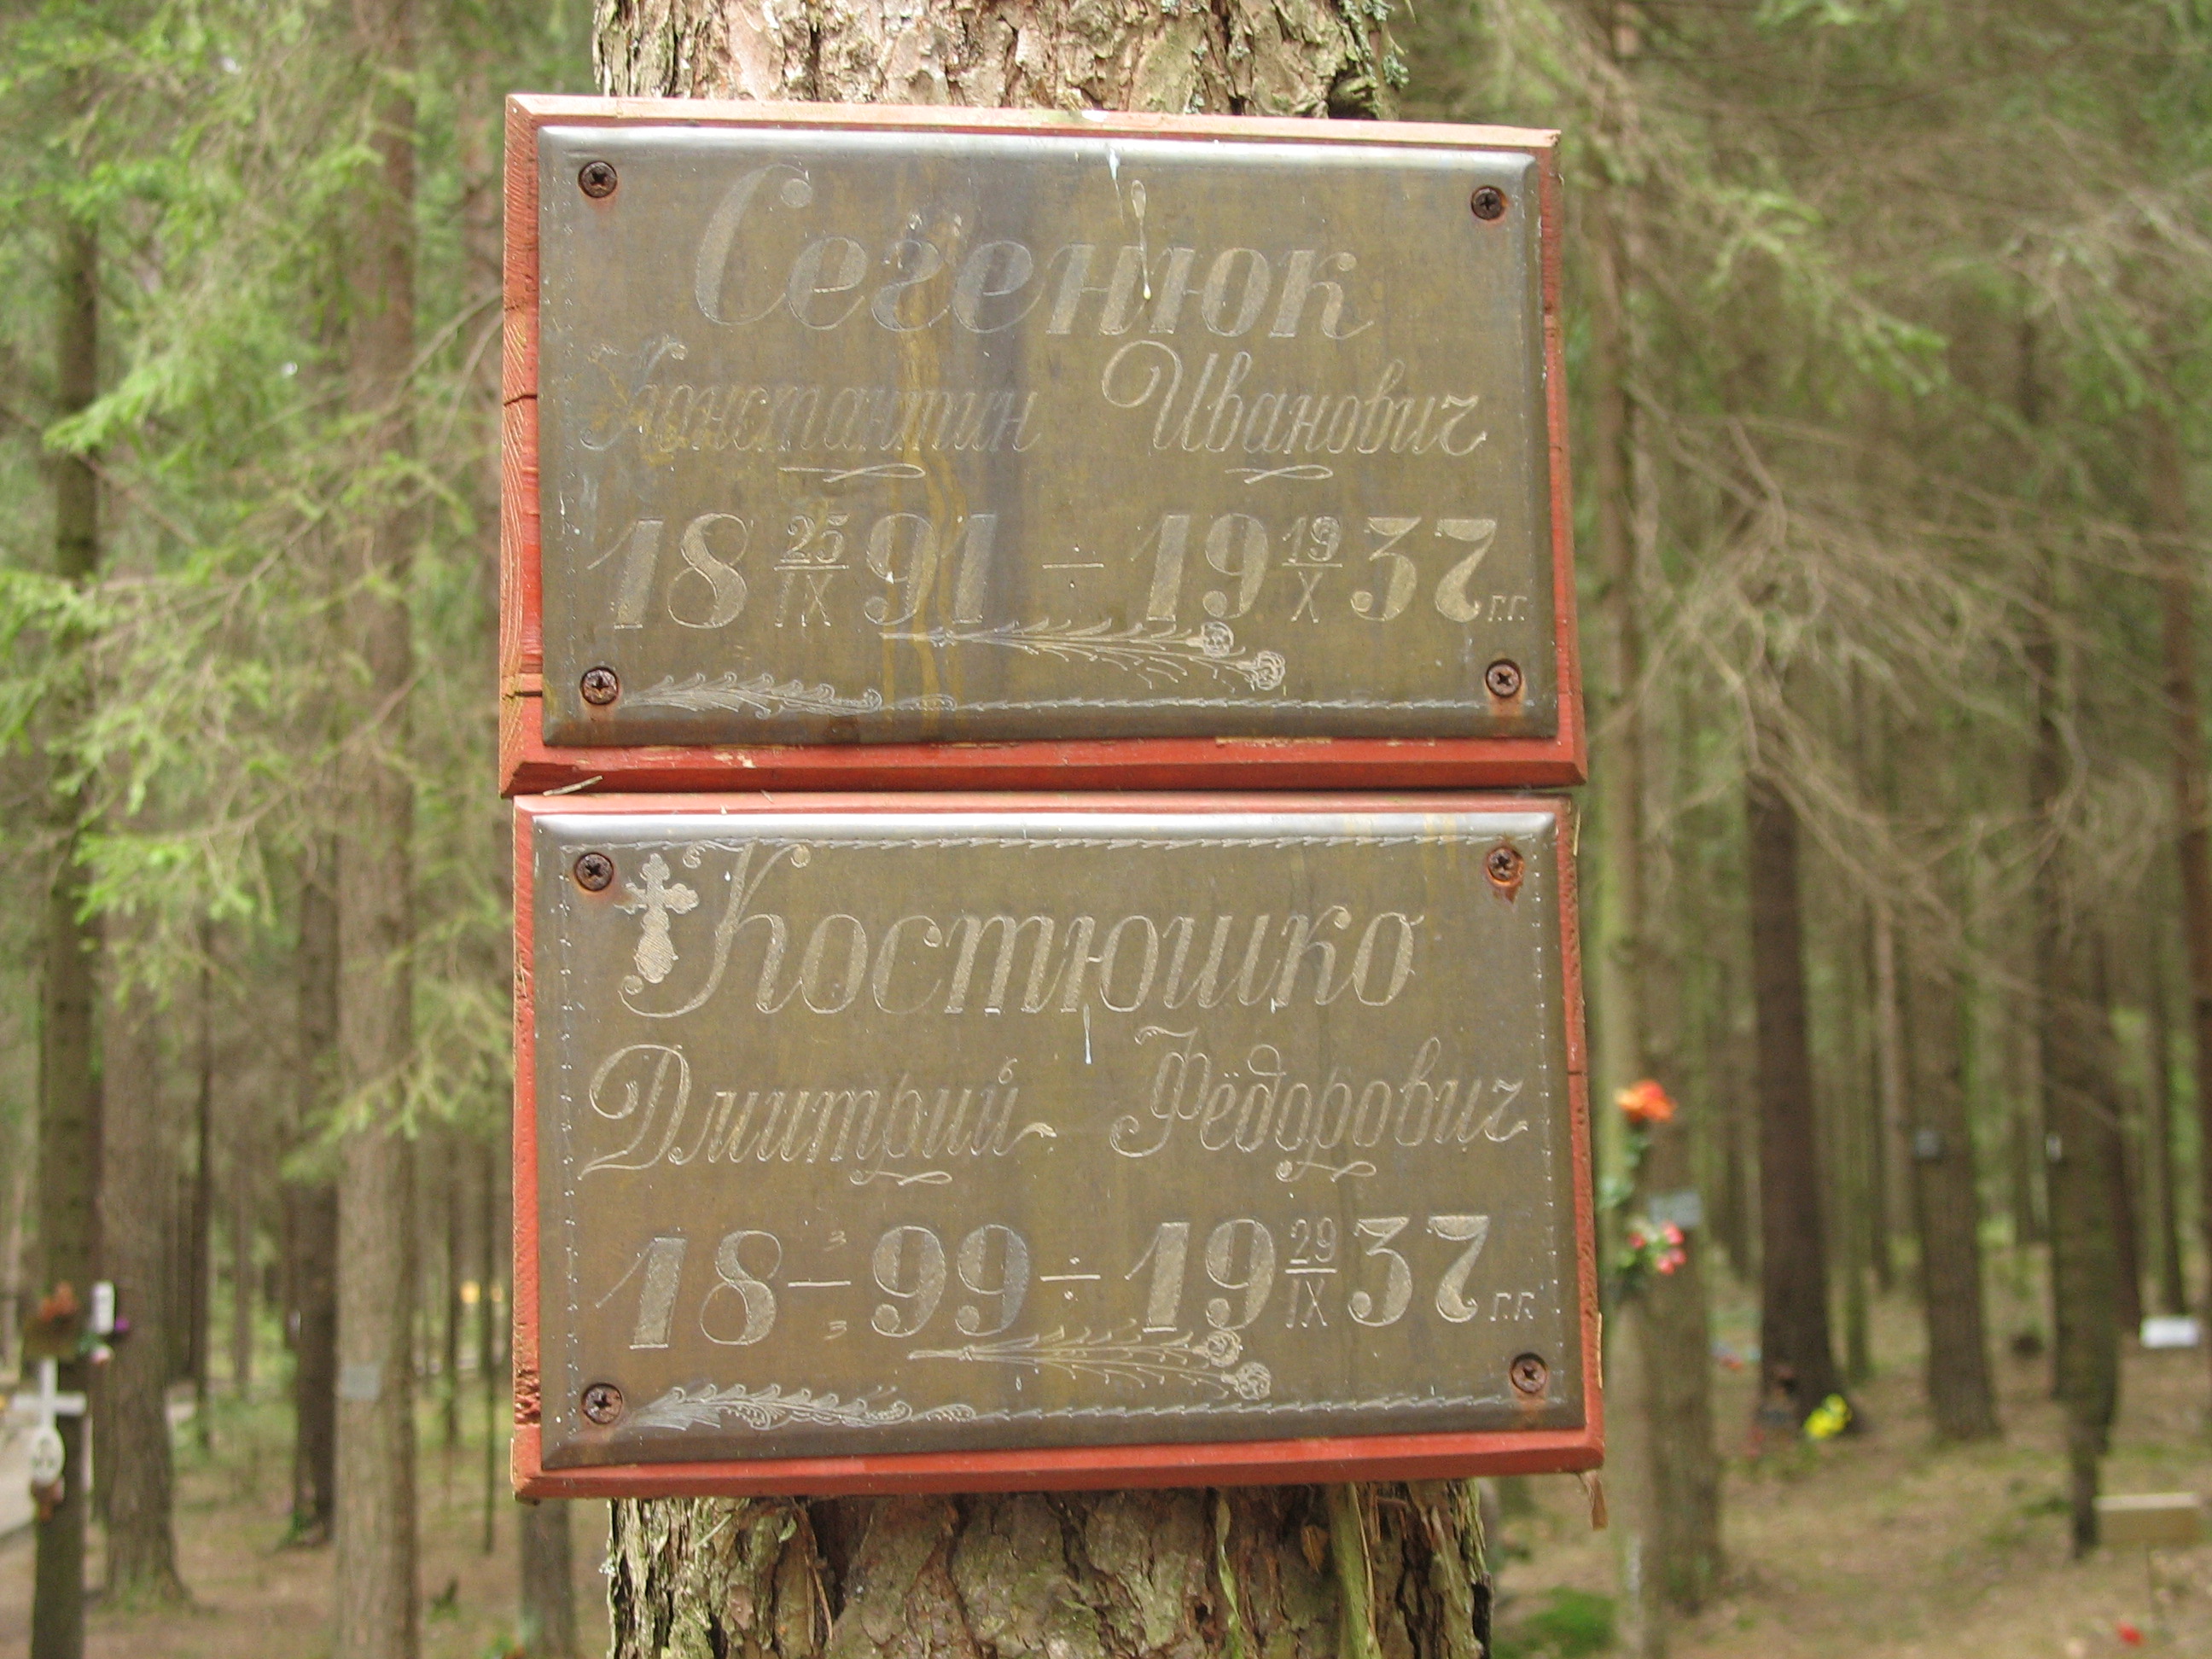 Памятная табличка К. И. Сегенюку. Фото 22.04.2007